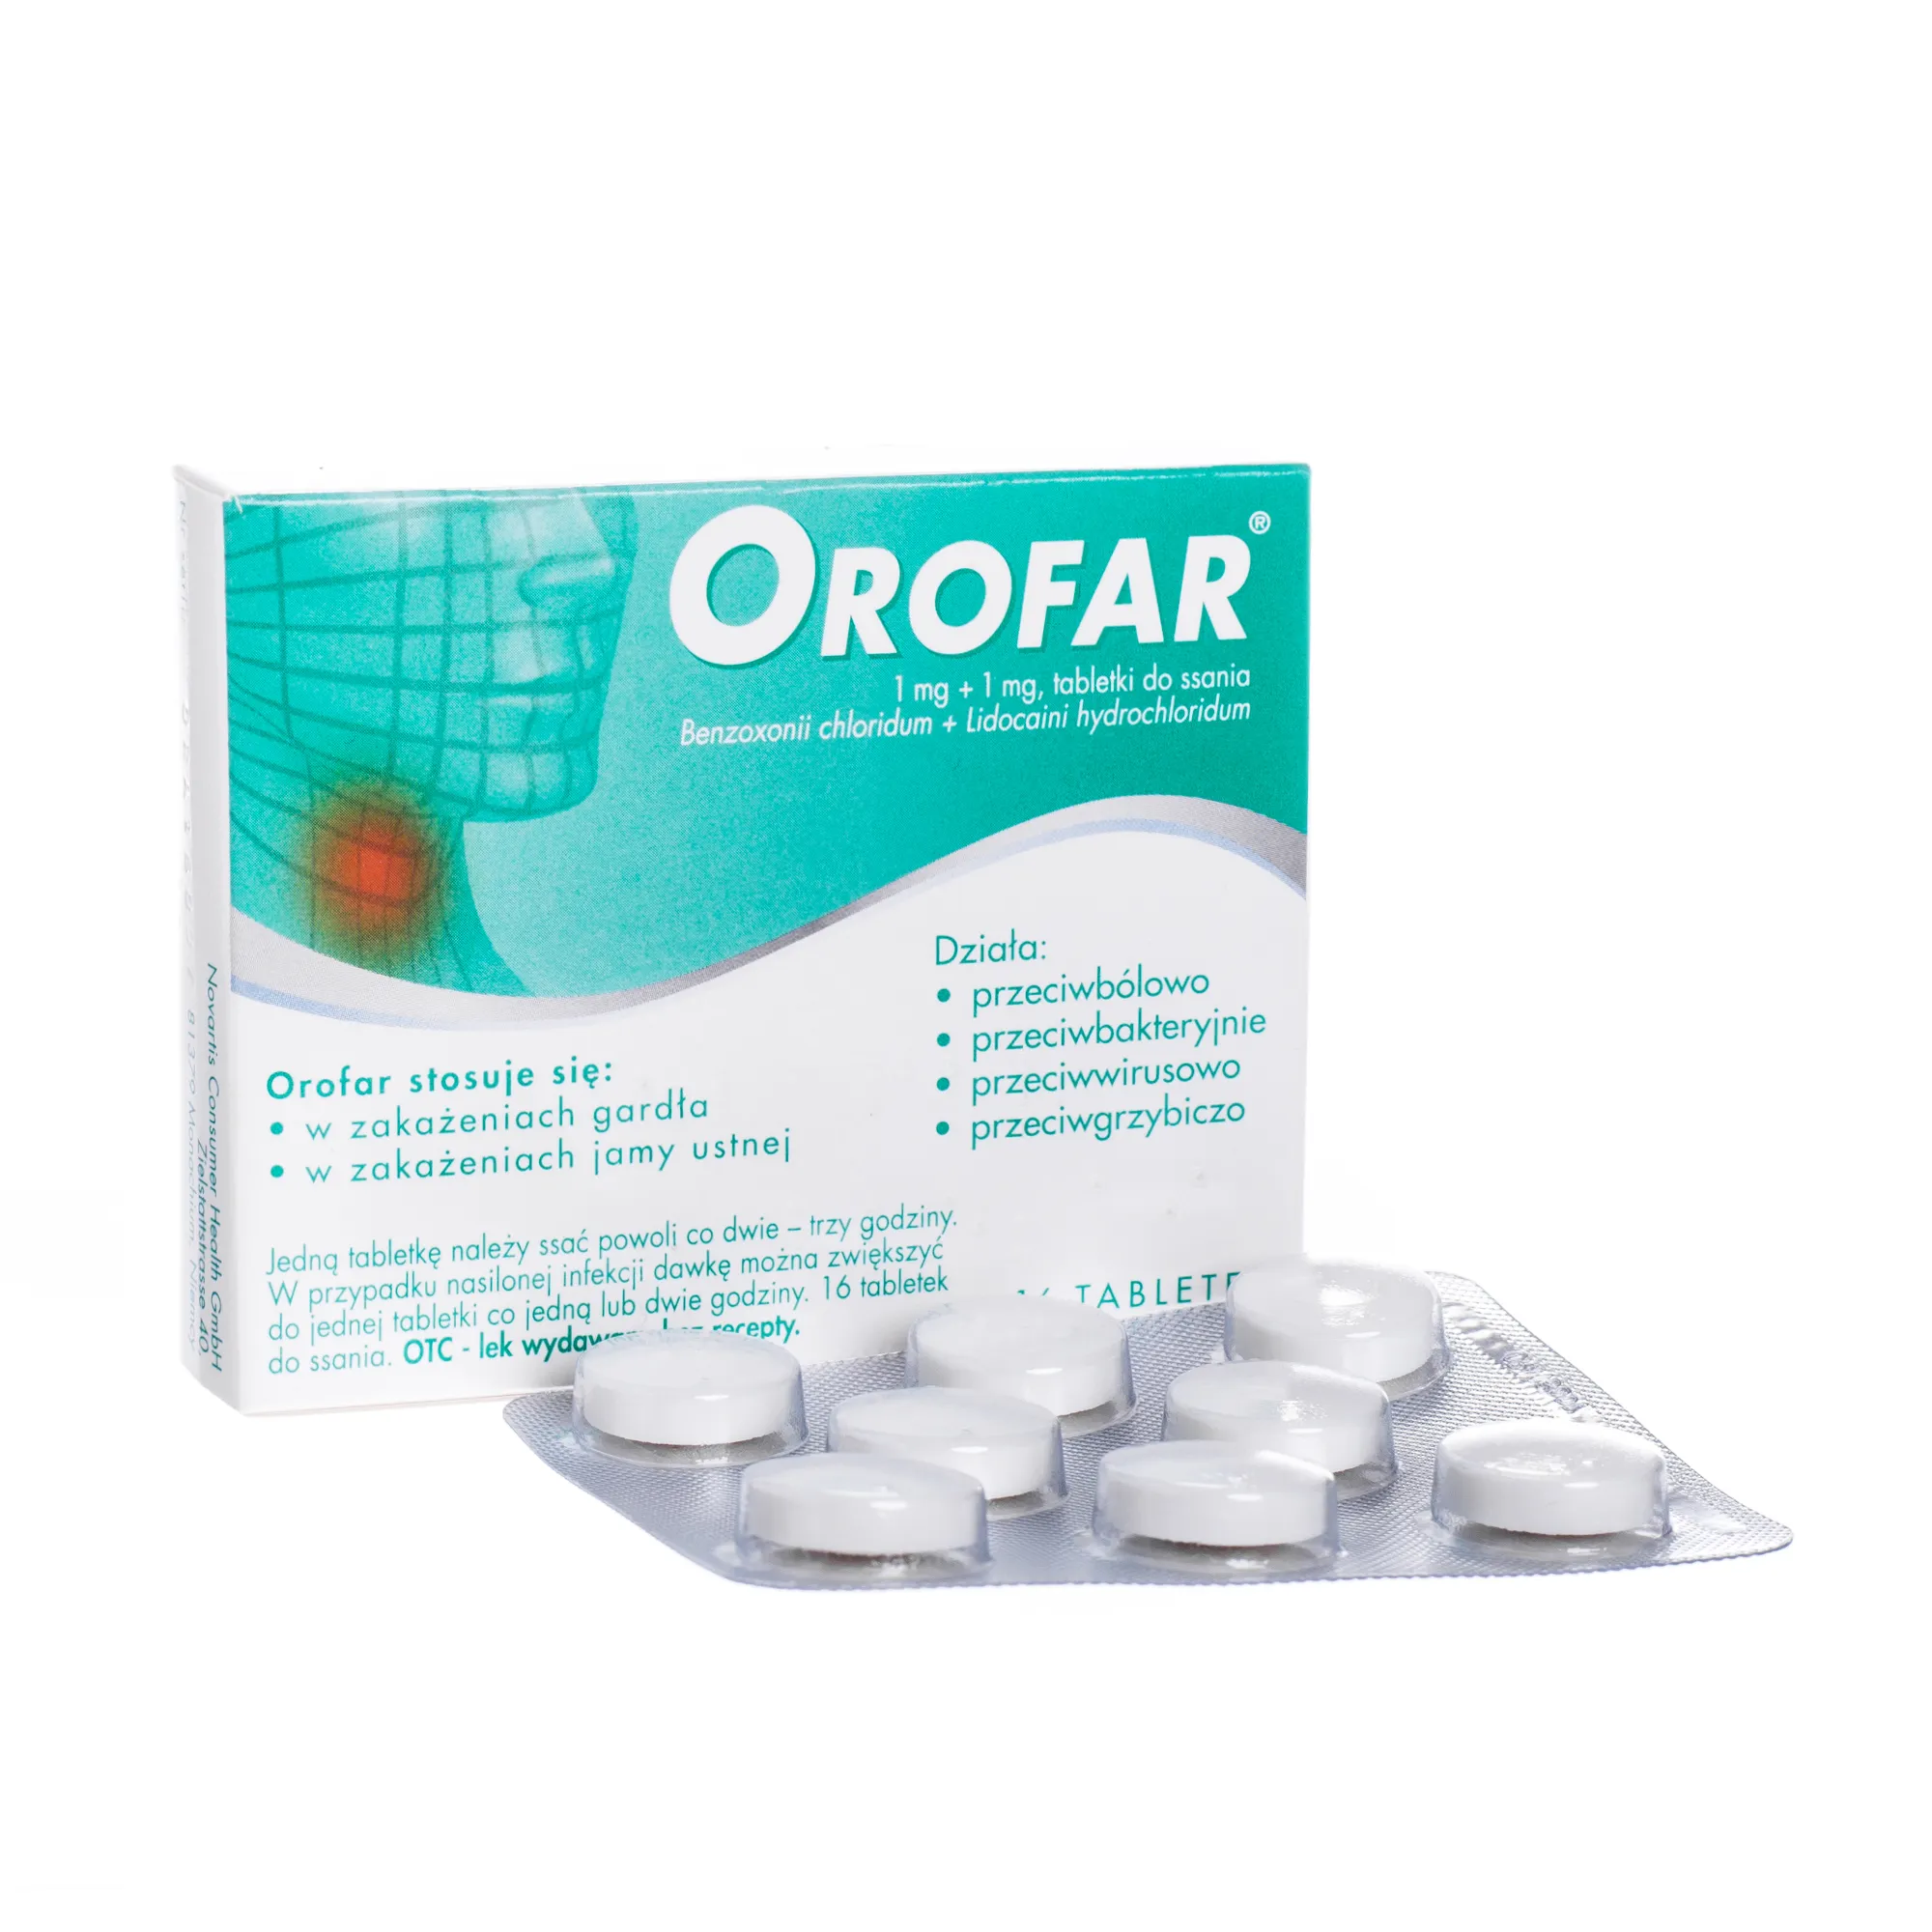 Orofar, lek przeciwbólowy, 1mg+1mg, 16 tabletek do ssania 